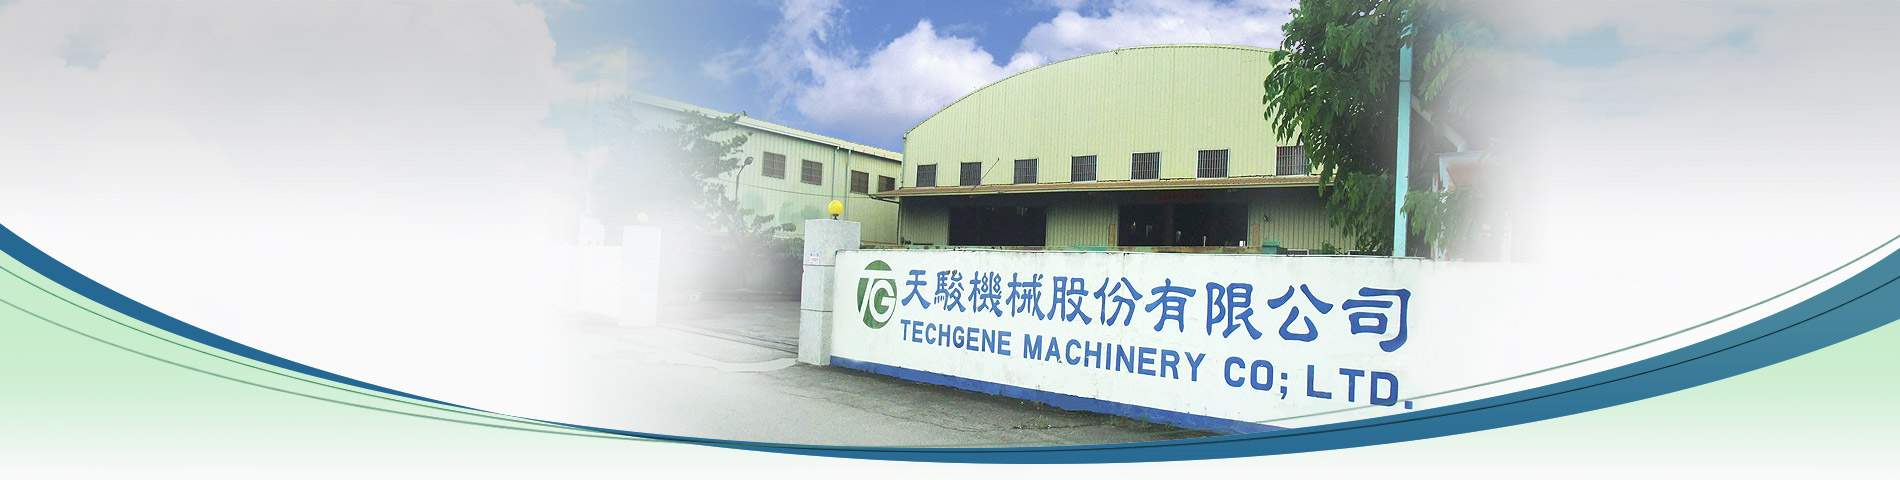 专业设计生产 自动压缩捆包机 之台湾制造商